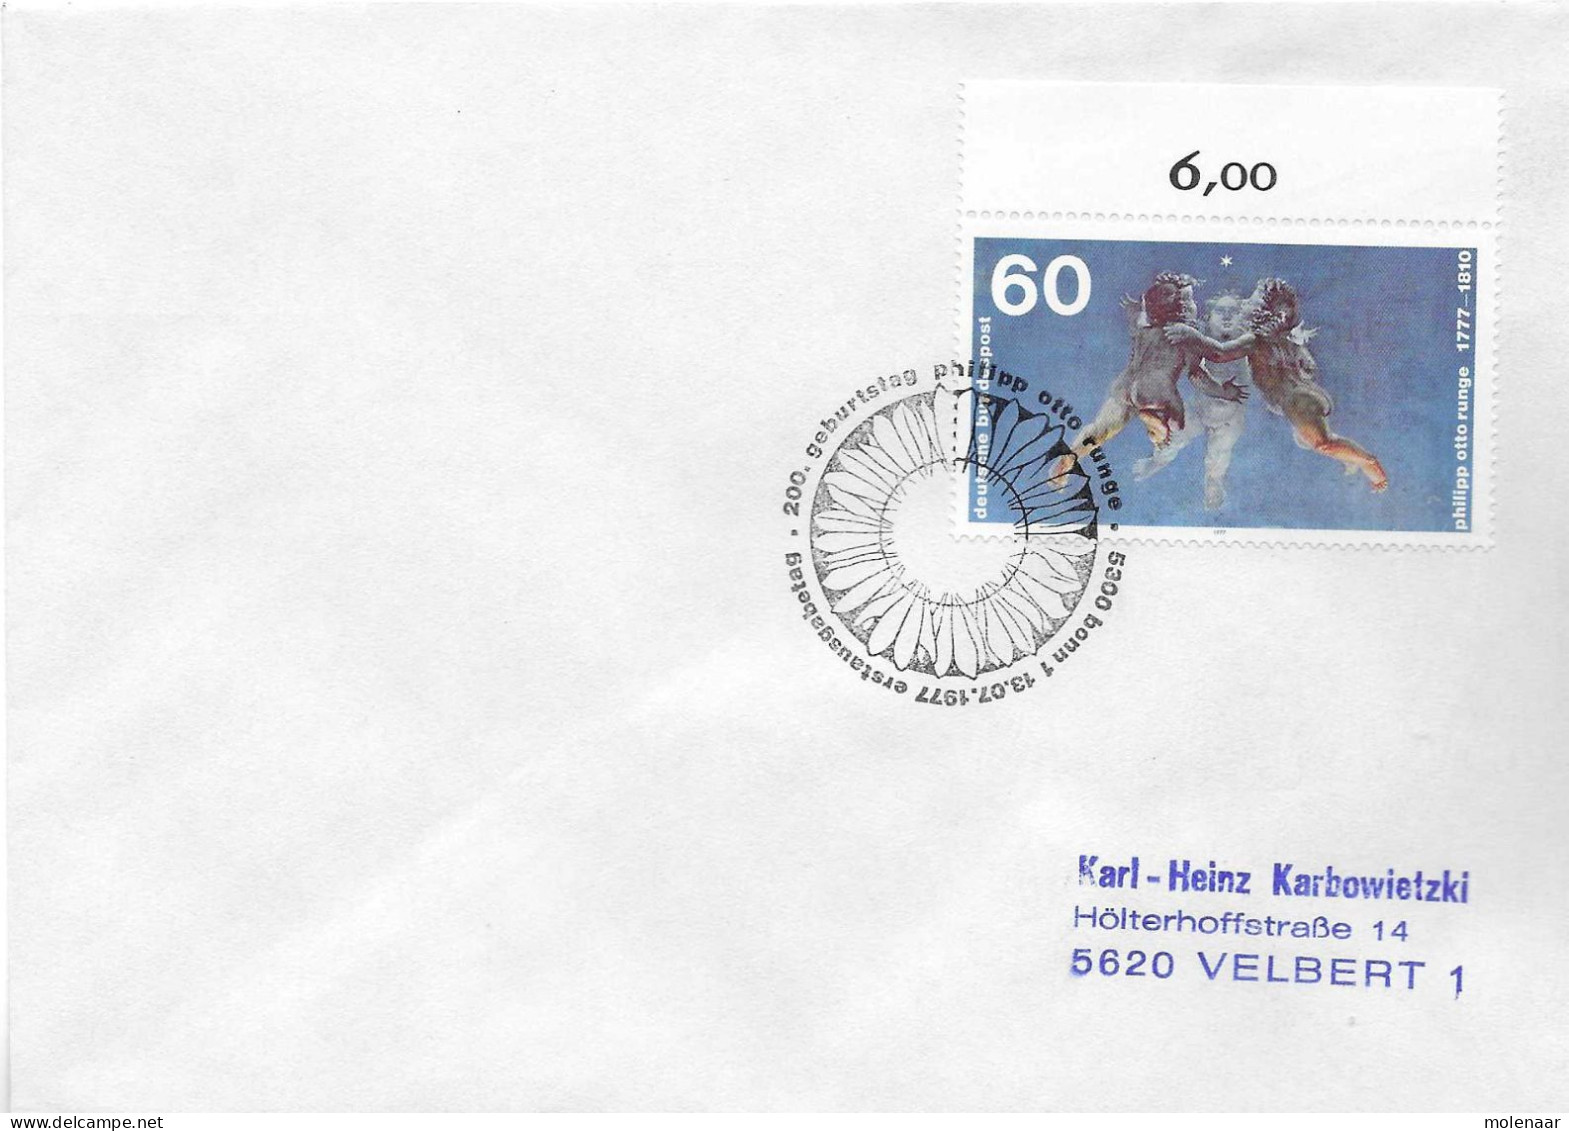 Postzegels > Europa > Duitsland > West-Duitsland > 1970-1979 > Brief Met No. 940 (17377) - Brieven En Documenten